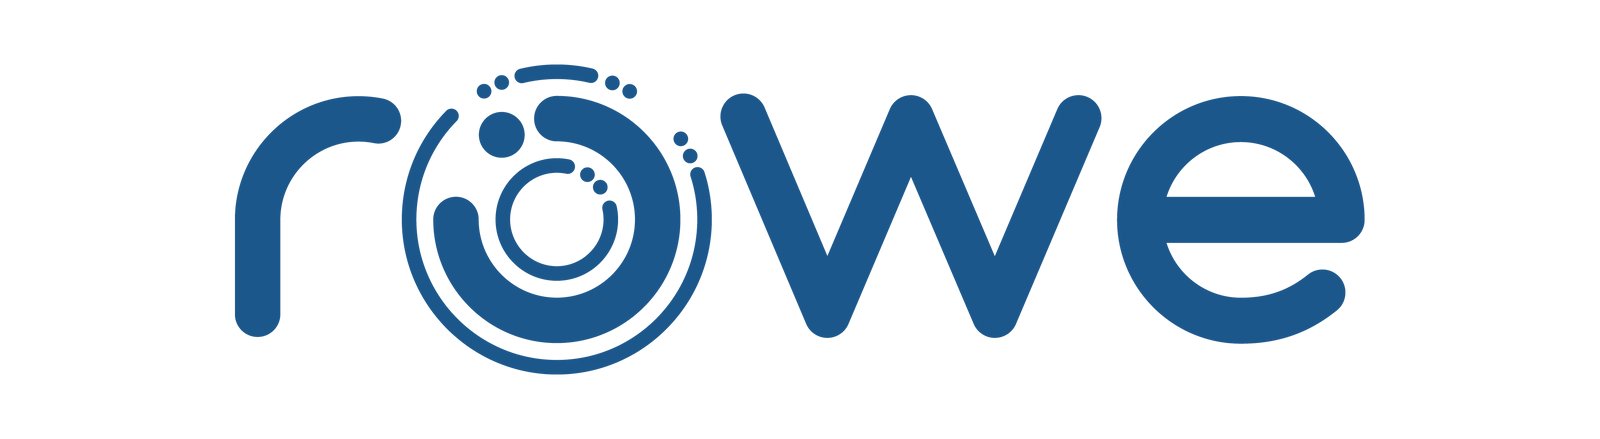 Rowe IT logo.